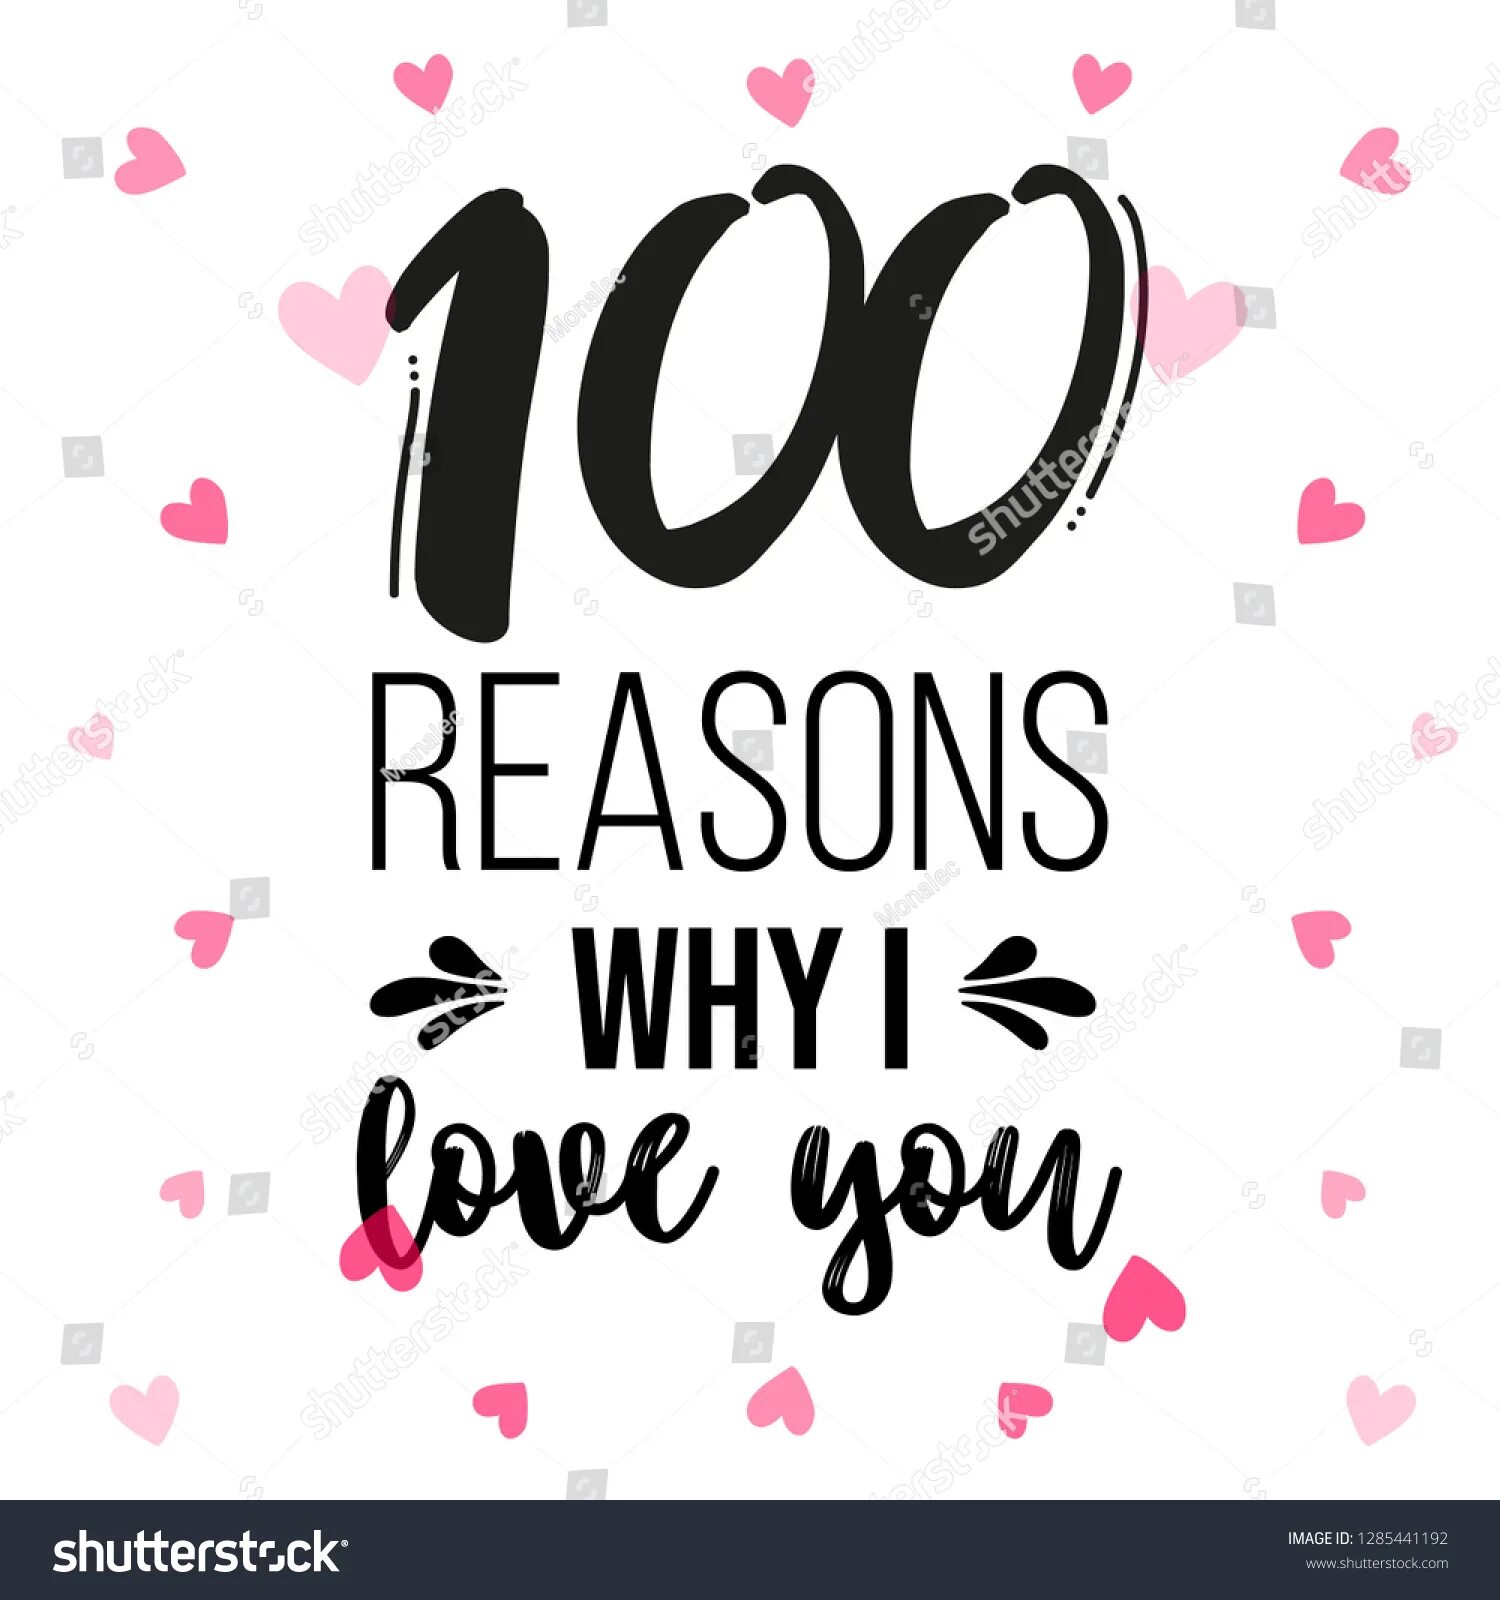 100 Reasons why i Love you. 101 Reasons why i Love you.